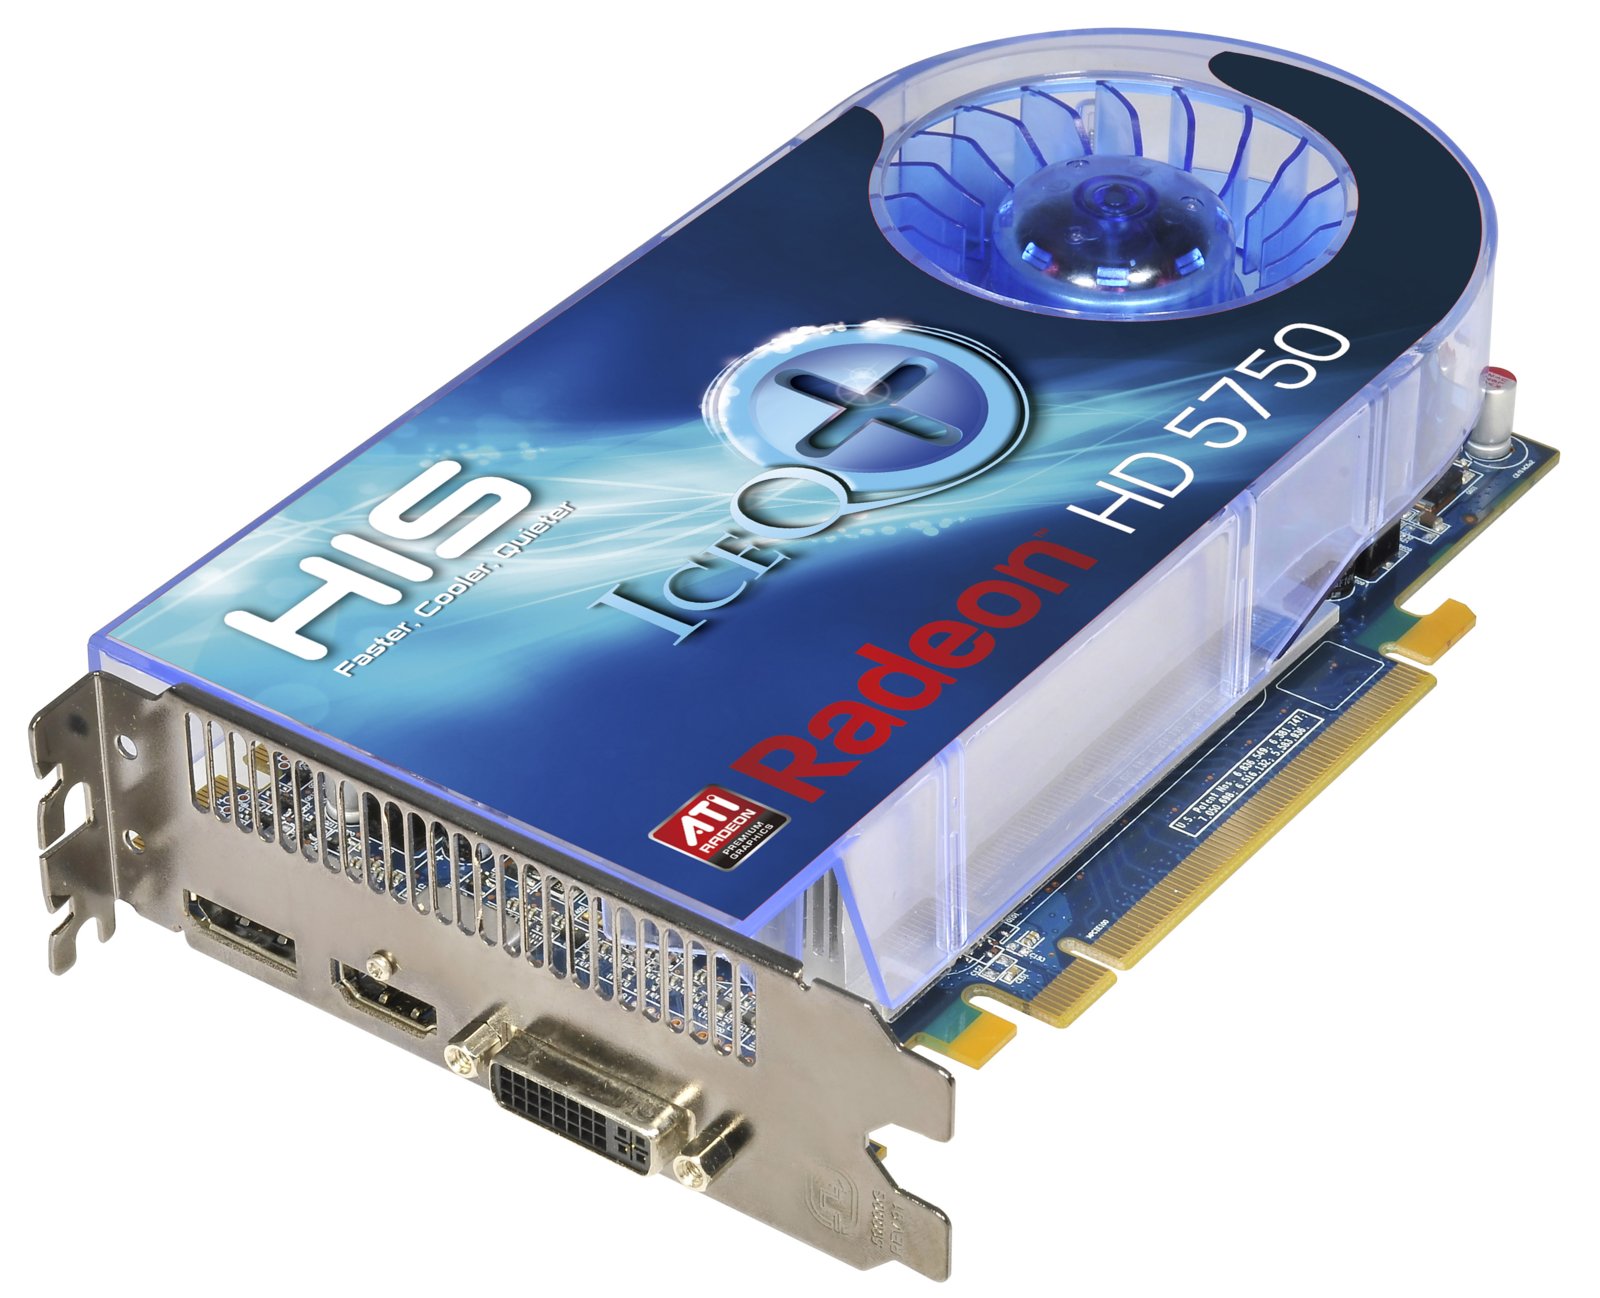 HIS Radeon HD 5750 ICEQ+ modelinin satışına başladı